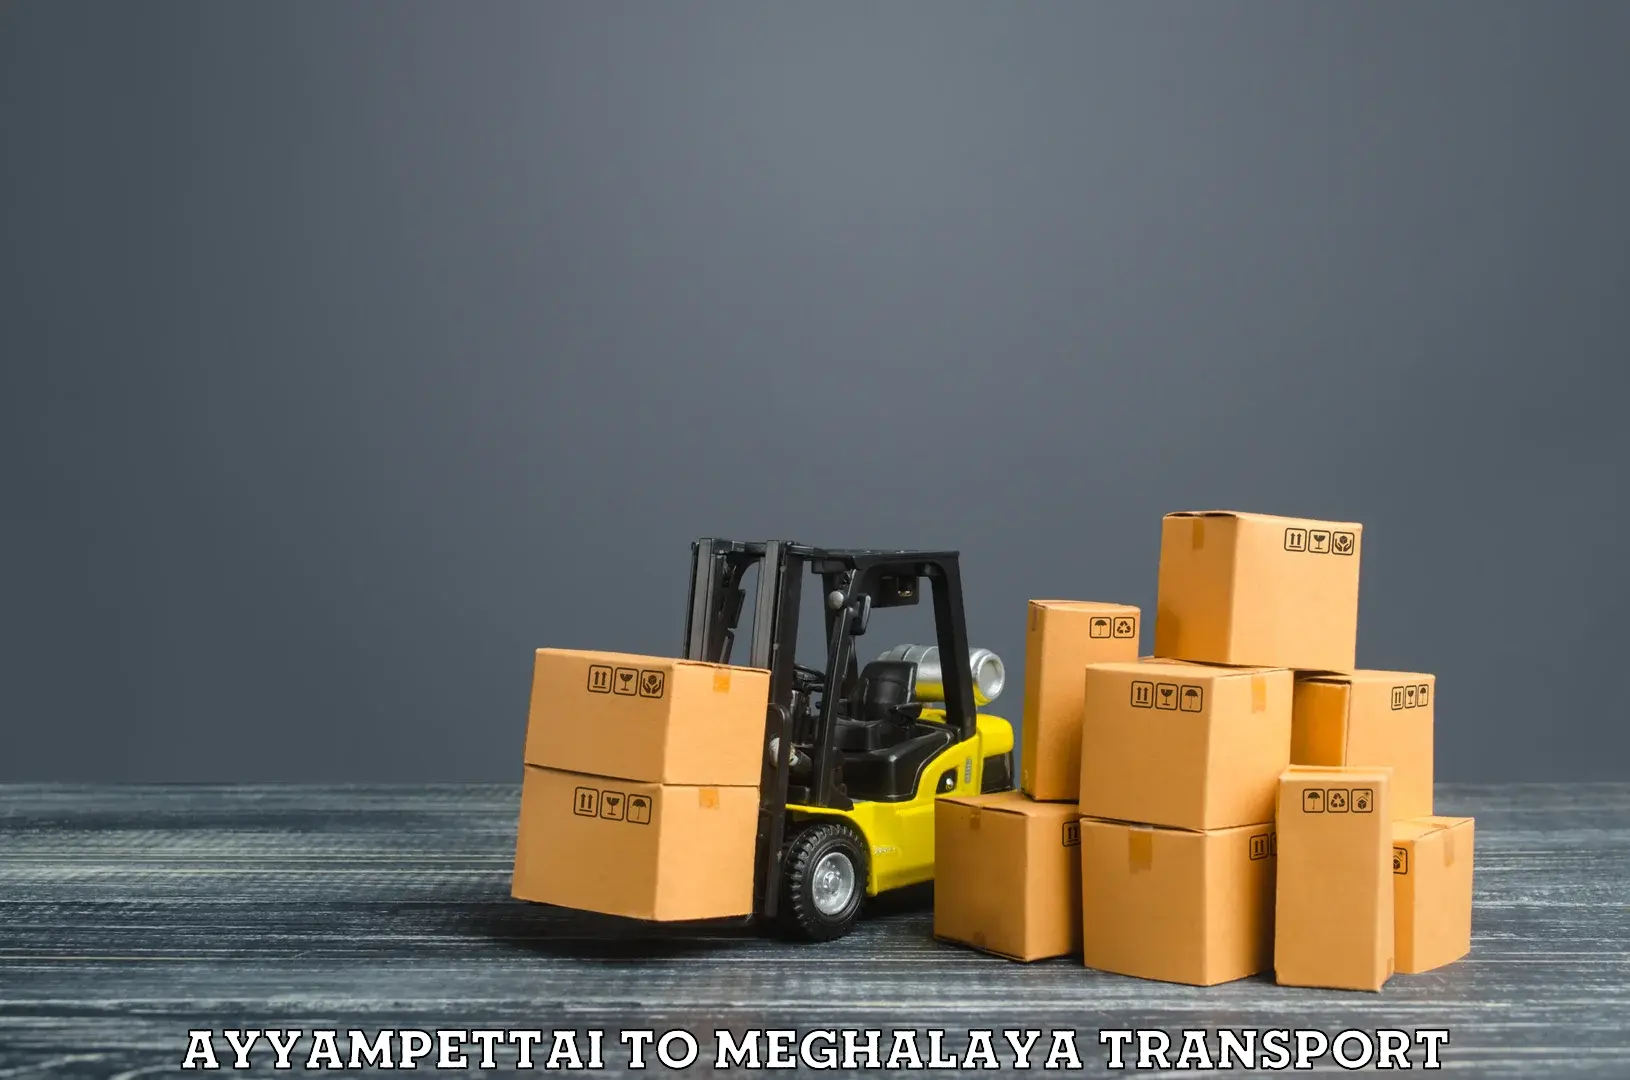 Lorry transport service Ayyampettai to Meghalaya